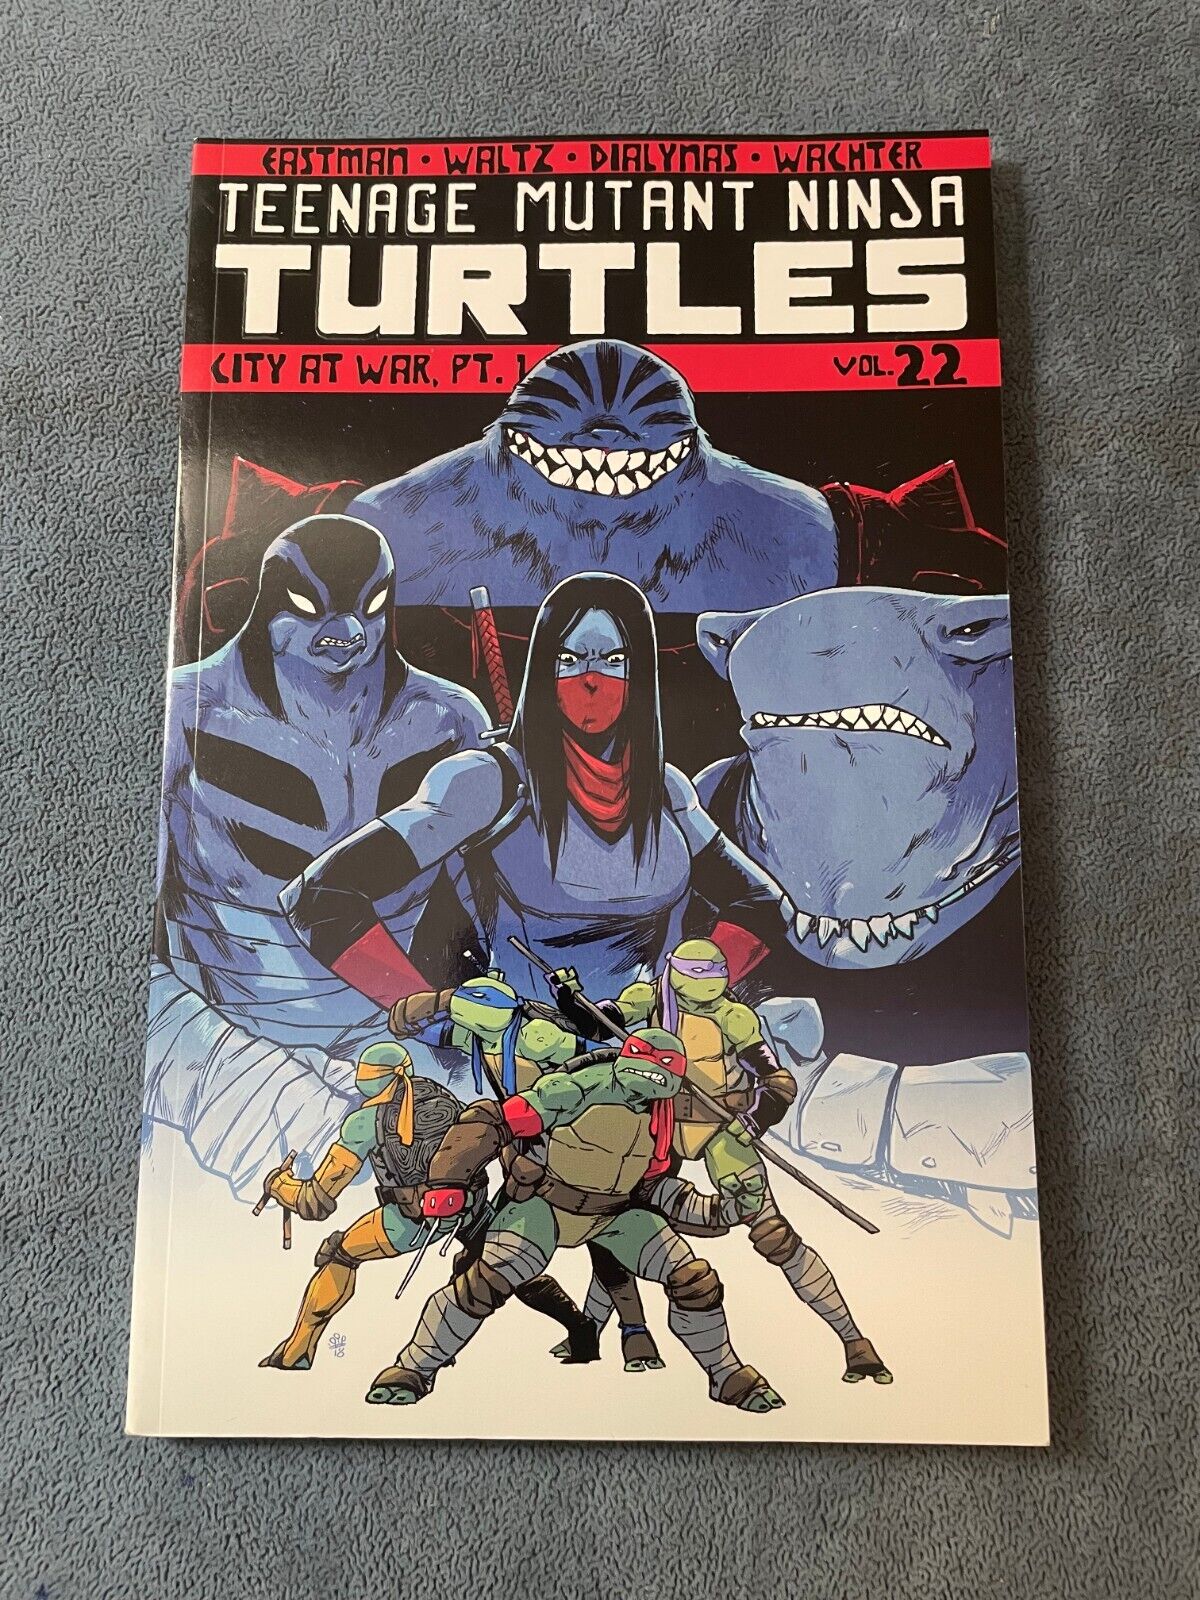 Teenage Mutant Ninja Turtles #22 City At War TMNT TPB 2019 Softcover IDW VF/NM